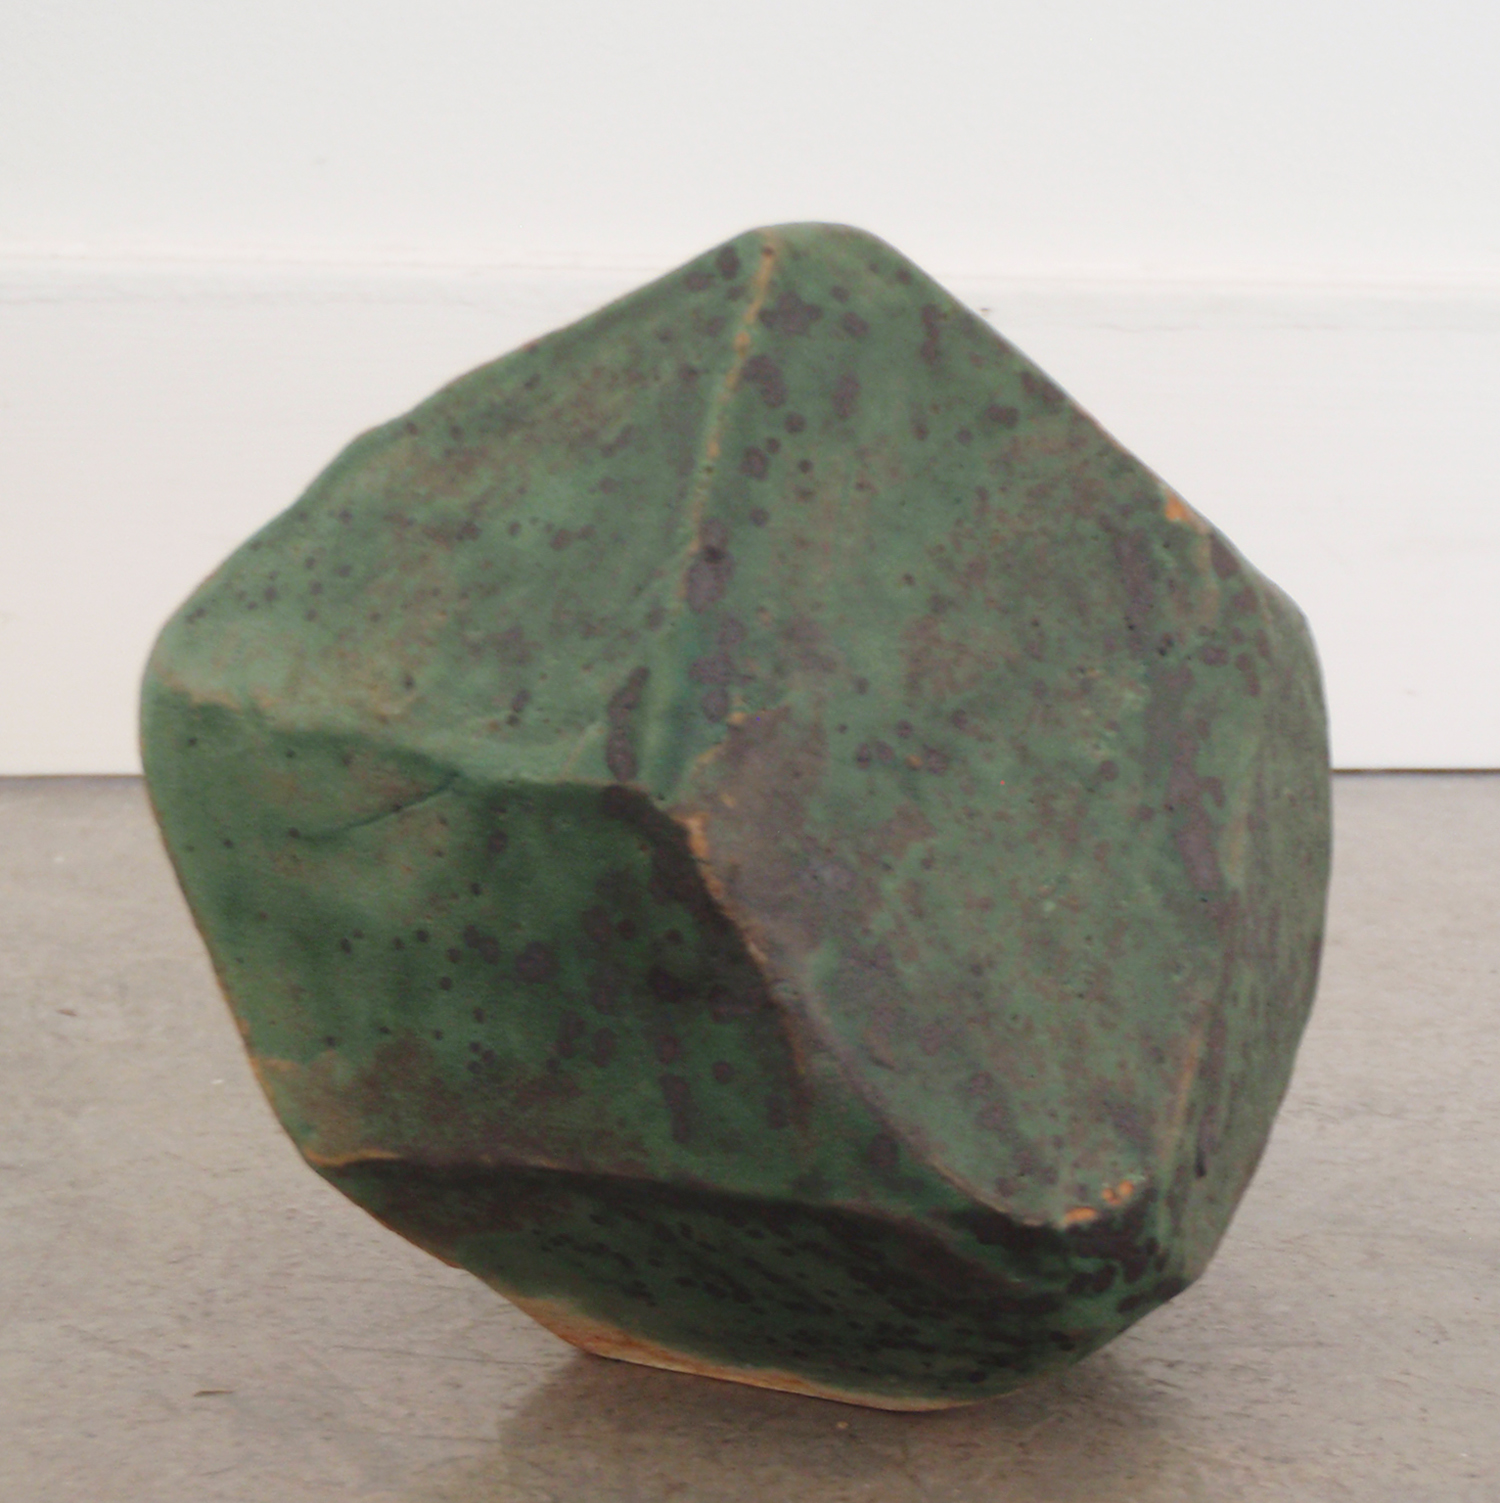   ANNA SEW HOY   verte/lichen , fired stoneware, 4" x 3.5" x 3.75", 2012 